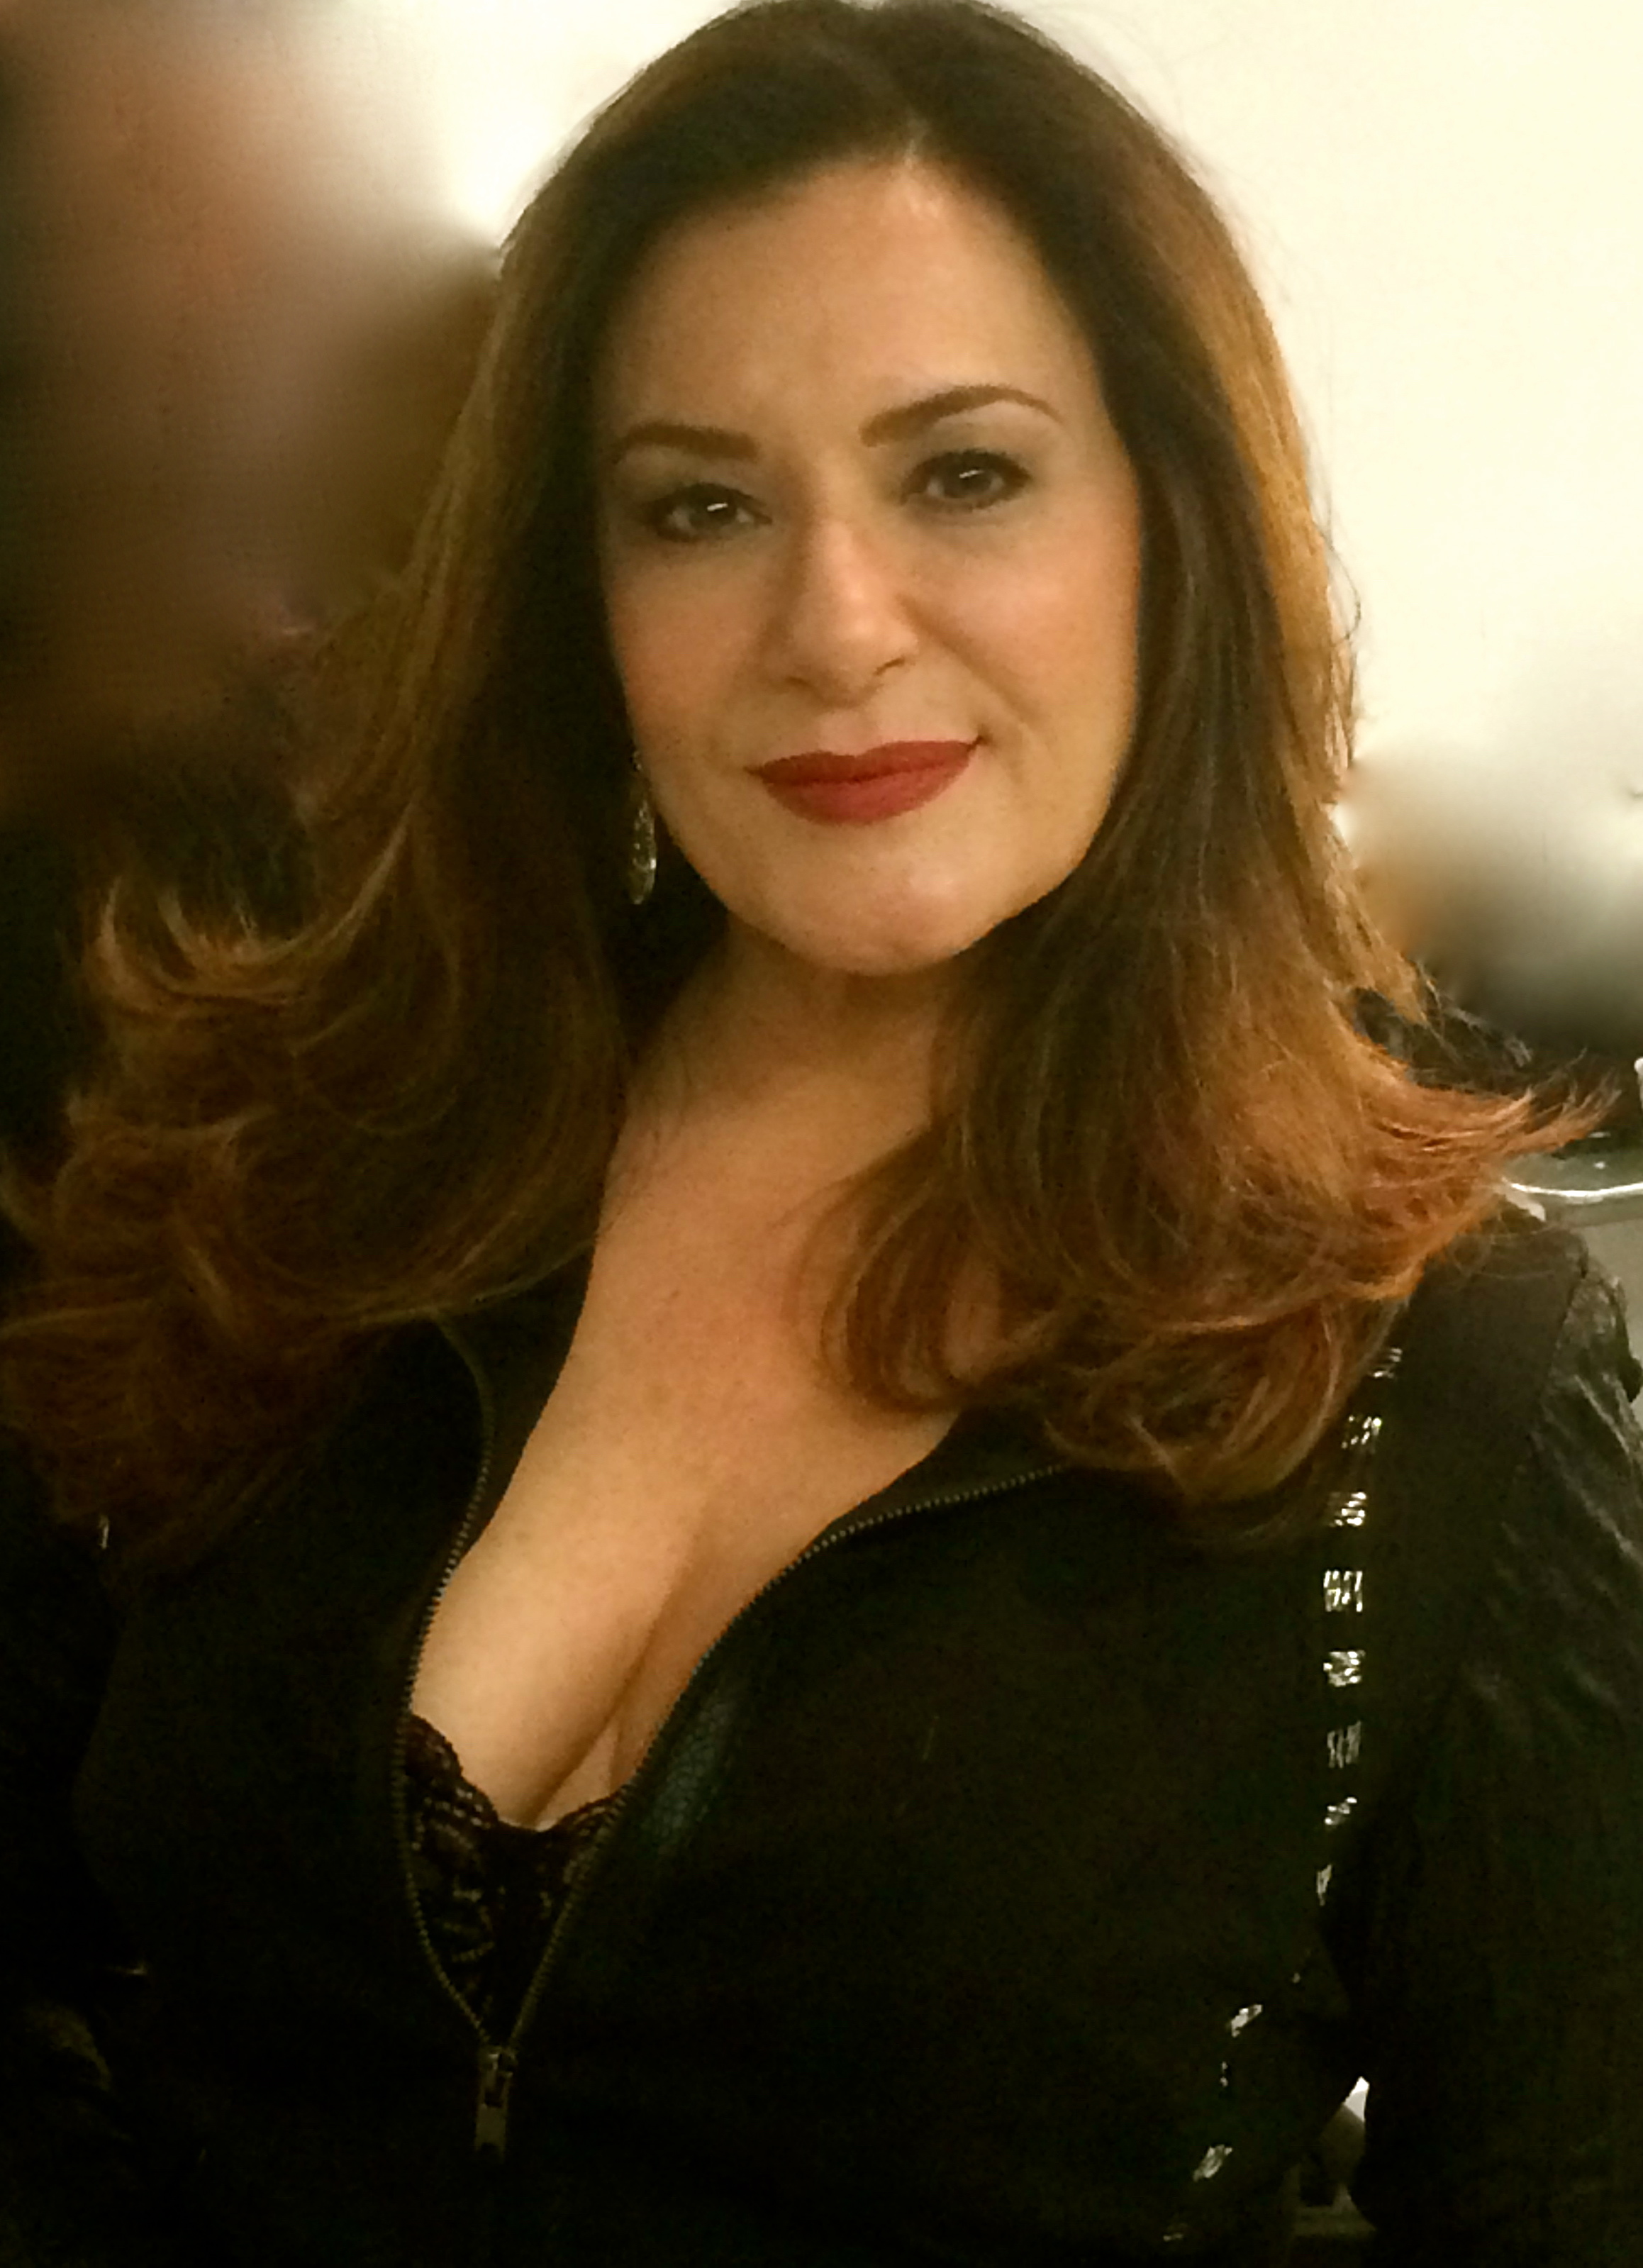 Sally Hershberger Salon modeling hair - February 2015